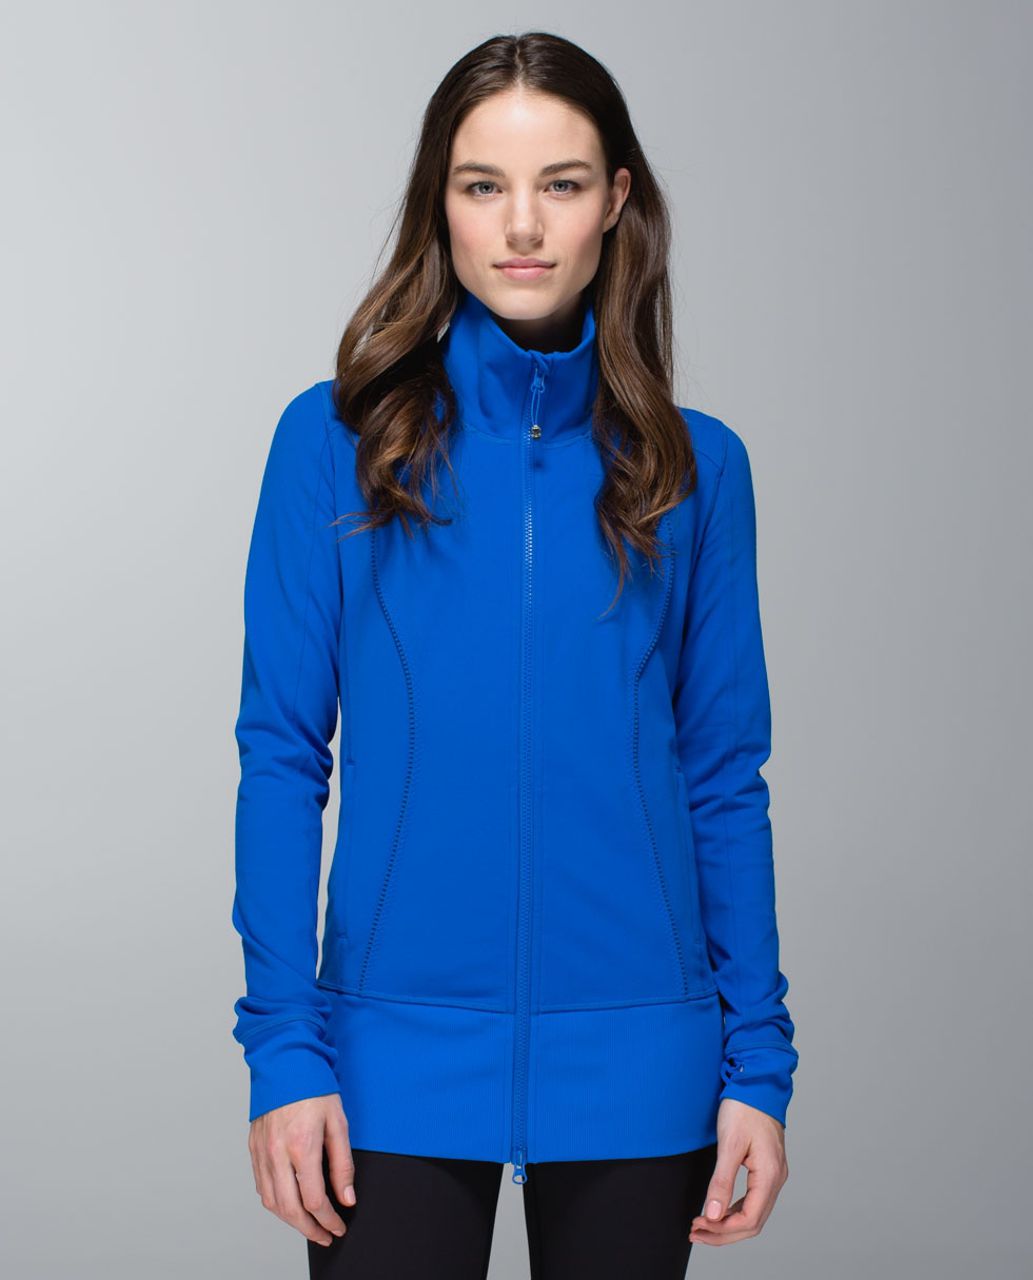 lululemon athletica, Jackets & Coats, Lululemon Yohari Blue Sweater Size 8  Medium Sweatshirt Zip Jacket